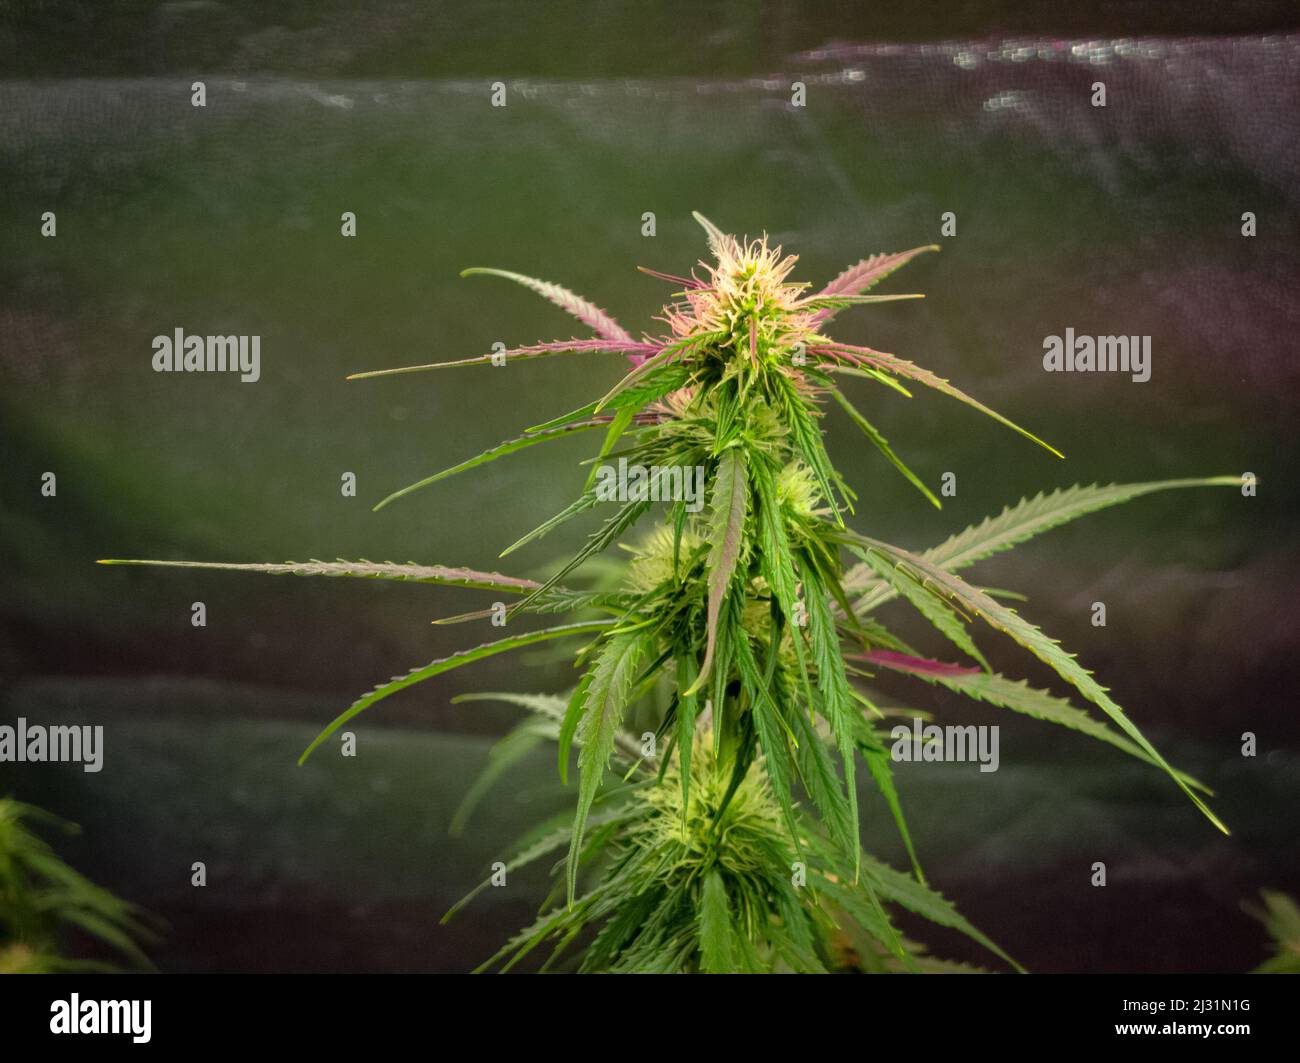 Un buisson de cannabis avec des feuilles vert vif dans une boîte de culture Banque D'Images